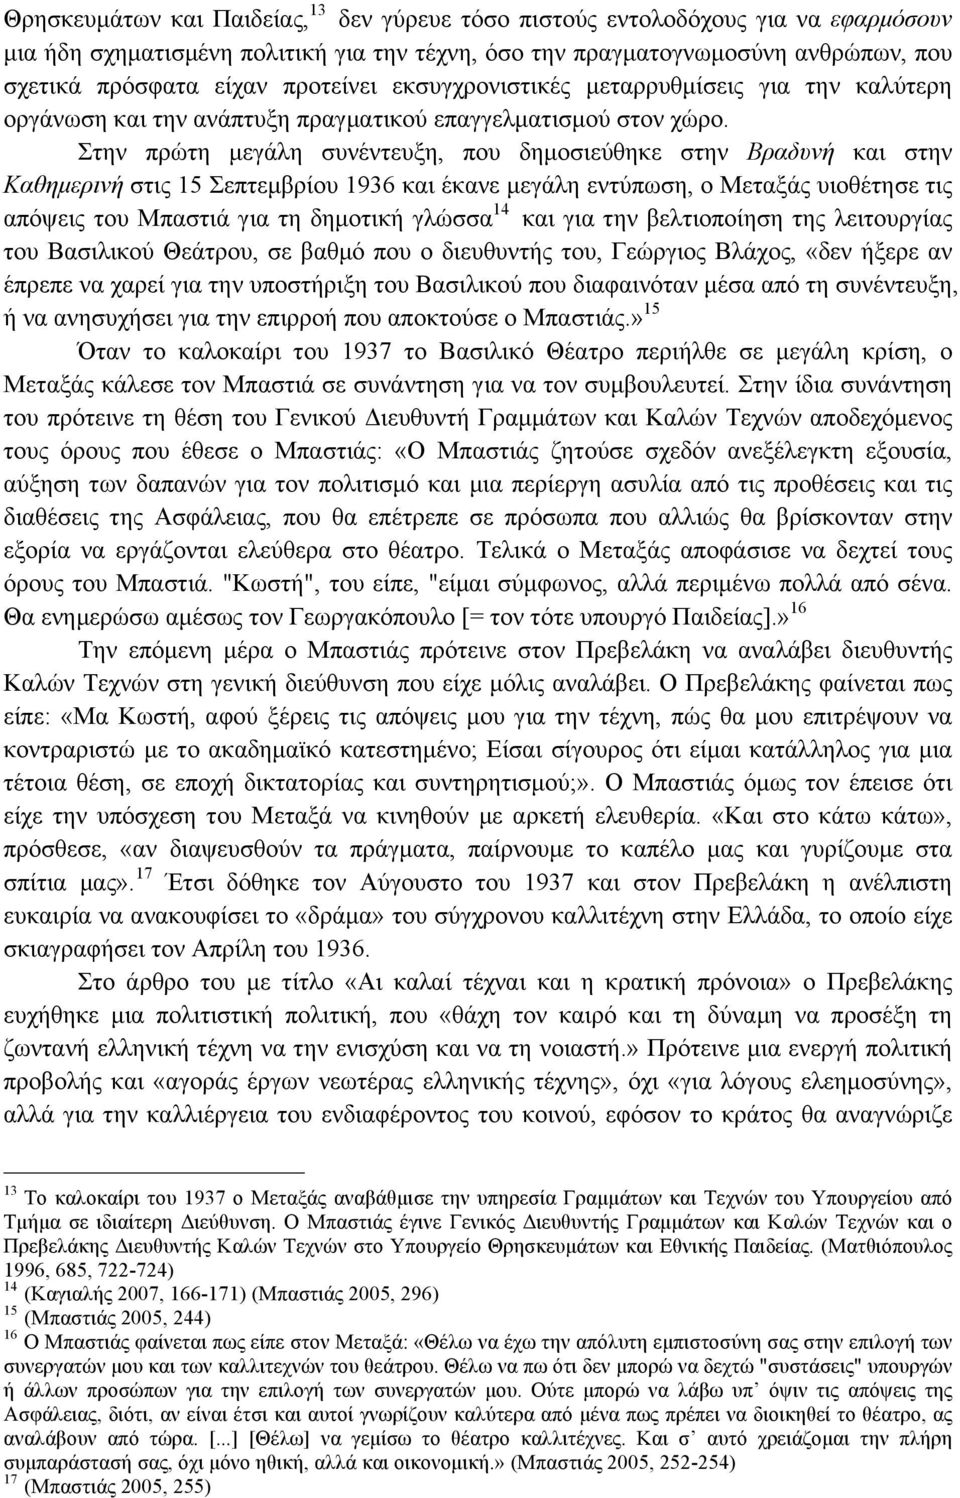 Στην πρώτη µεγάλη συνέντευξη, που δηµοσιεύθηκε στην Βραδυνή και στην Καθηµερινή στις 15 Σεπτεµβρίου 1936 και έκανε µεγάλη εντύπωση, ο Μεταξάς υιοθέτησε τις απόψεις του Μπαστιά για τη δηµοτική γλώσσα